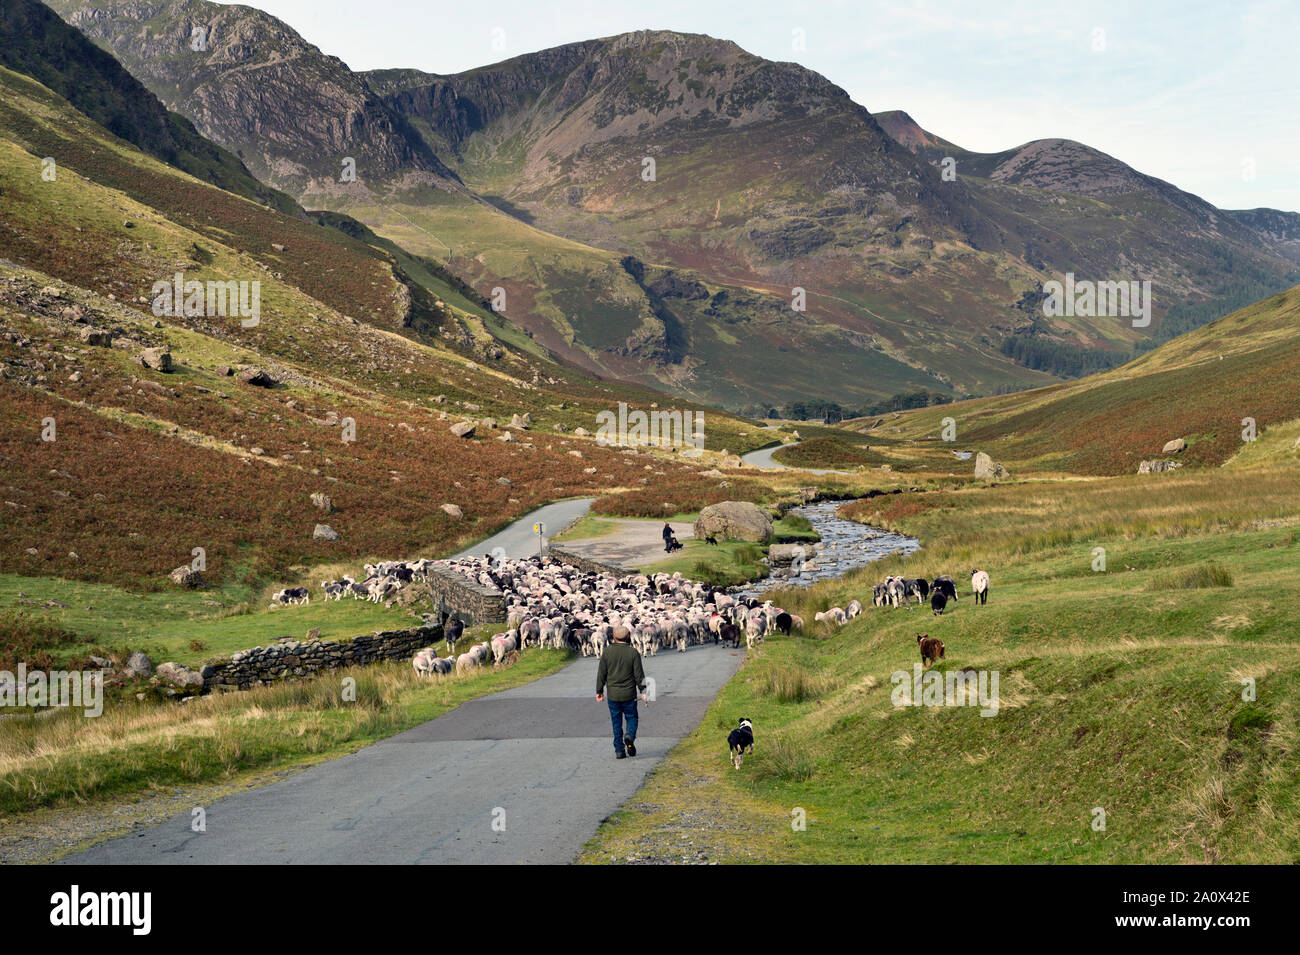 Ein fiel - Versammlung der Schafe in der honister Pass, den Lake District, England. Herdwick-schafe sind entlang der Straße durch die Hirten und ihre Hunde angetrieben. Stockfoto